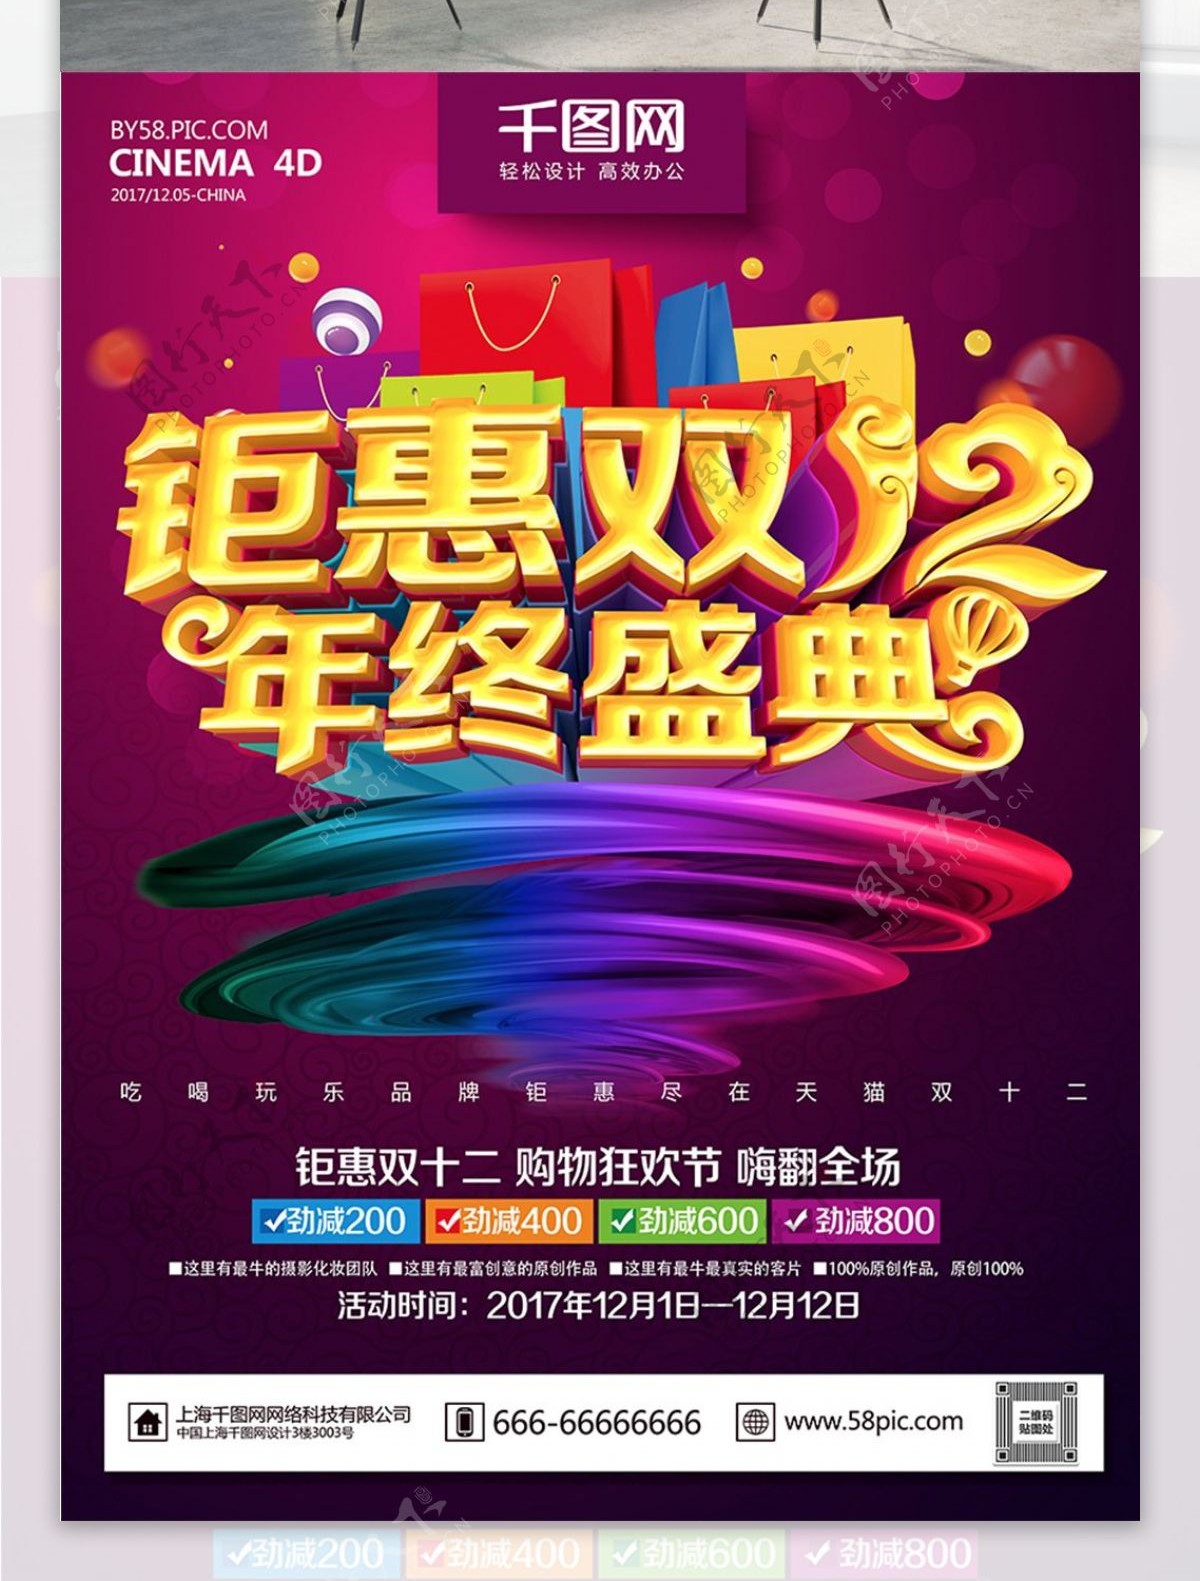 紫色大气炫彩钜惠双12促销海报PSD模板